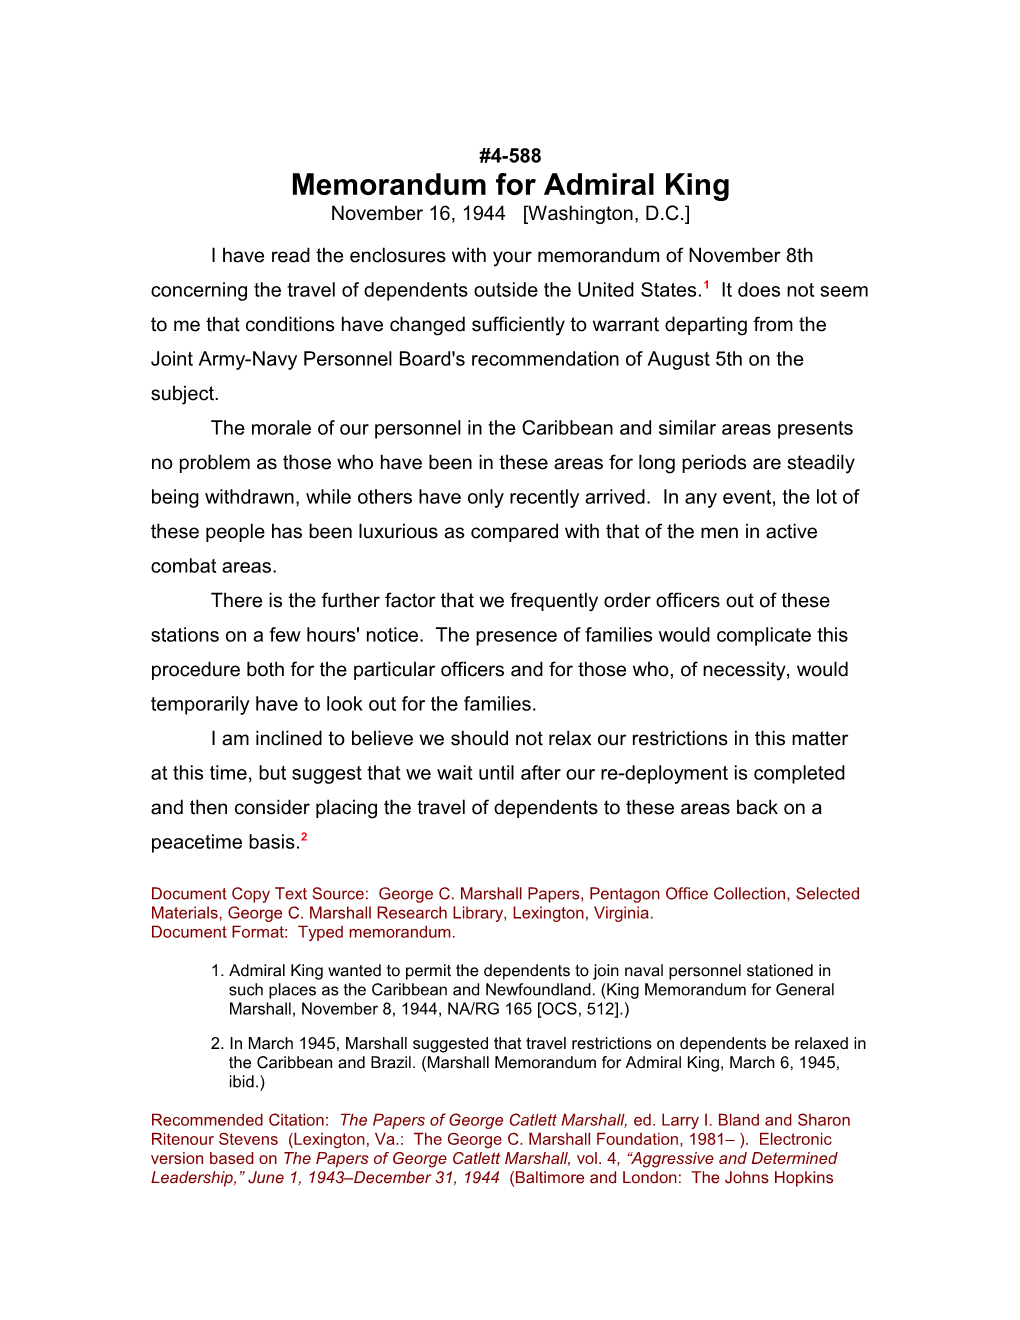 Memorandum for Admiral King